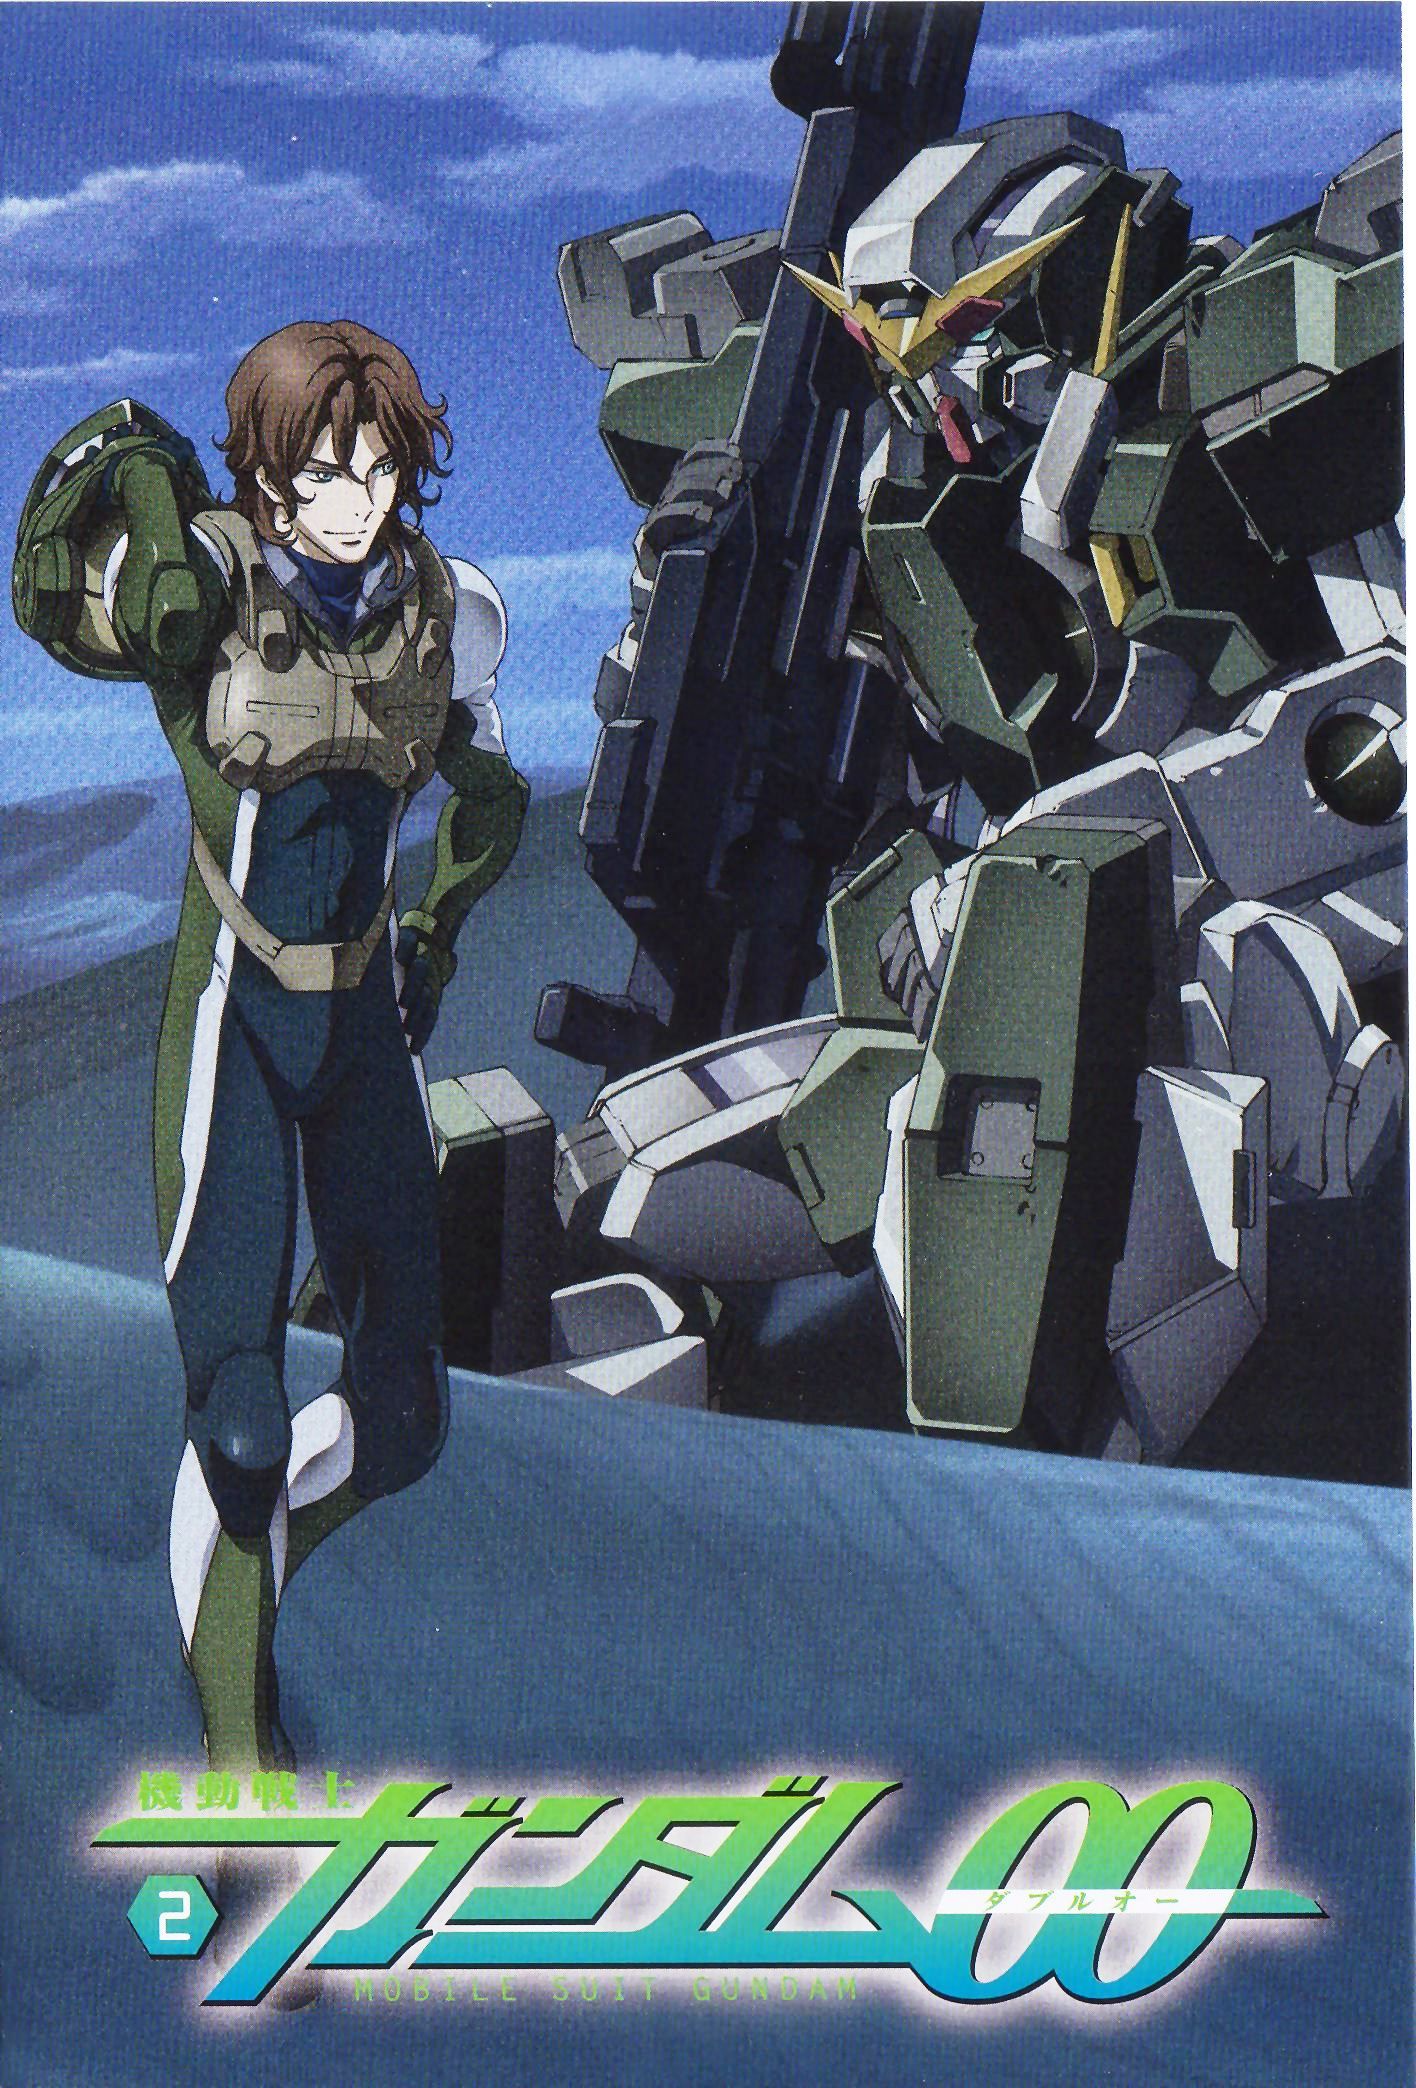 Gundam Dynames Anime Image Board